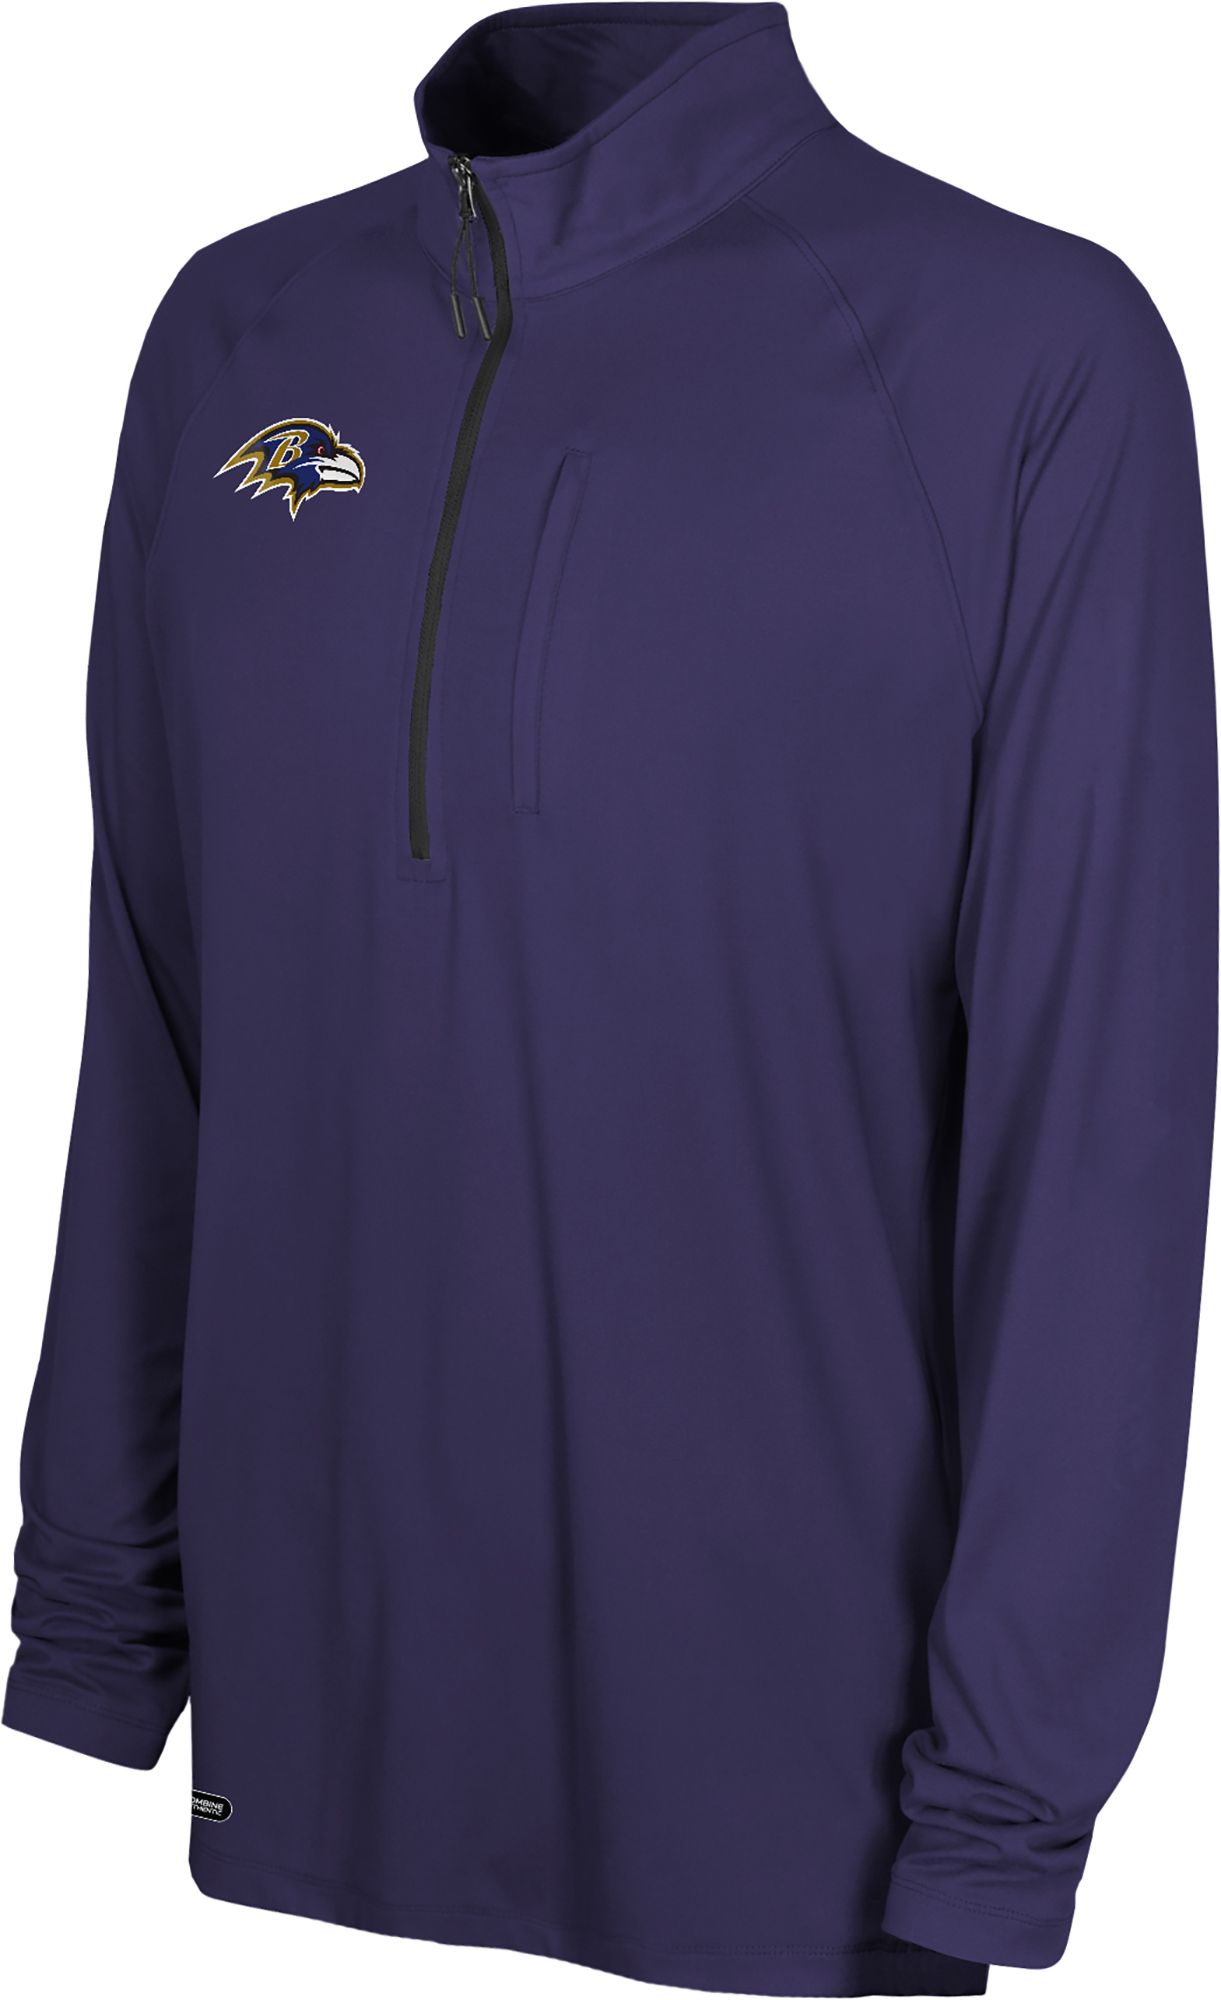 Nfl Combine Men's Baltimore Ravens Mock Neck Purple Quarter-Zip ...